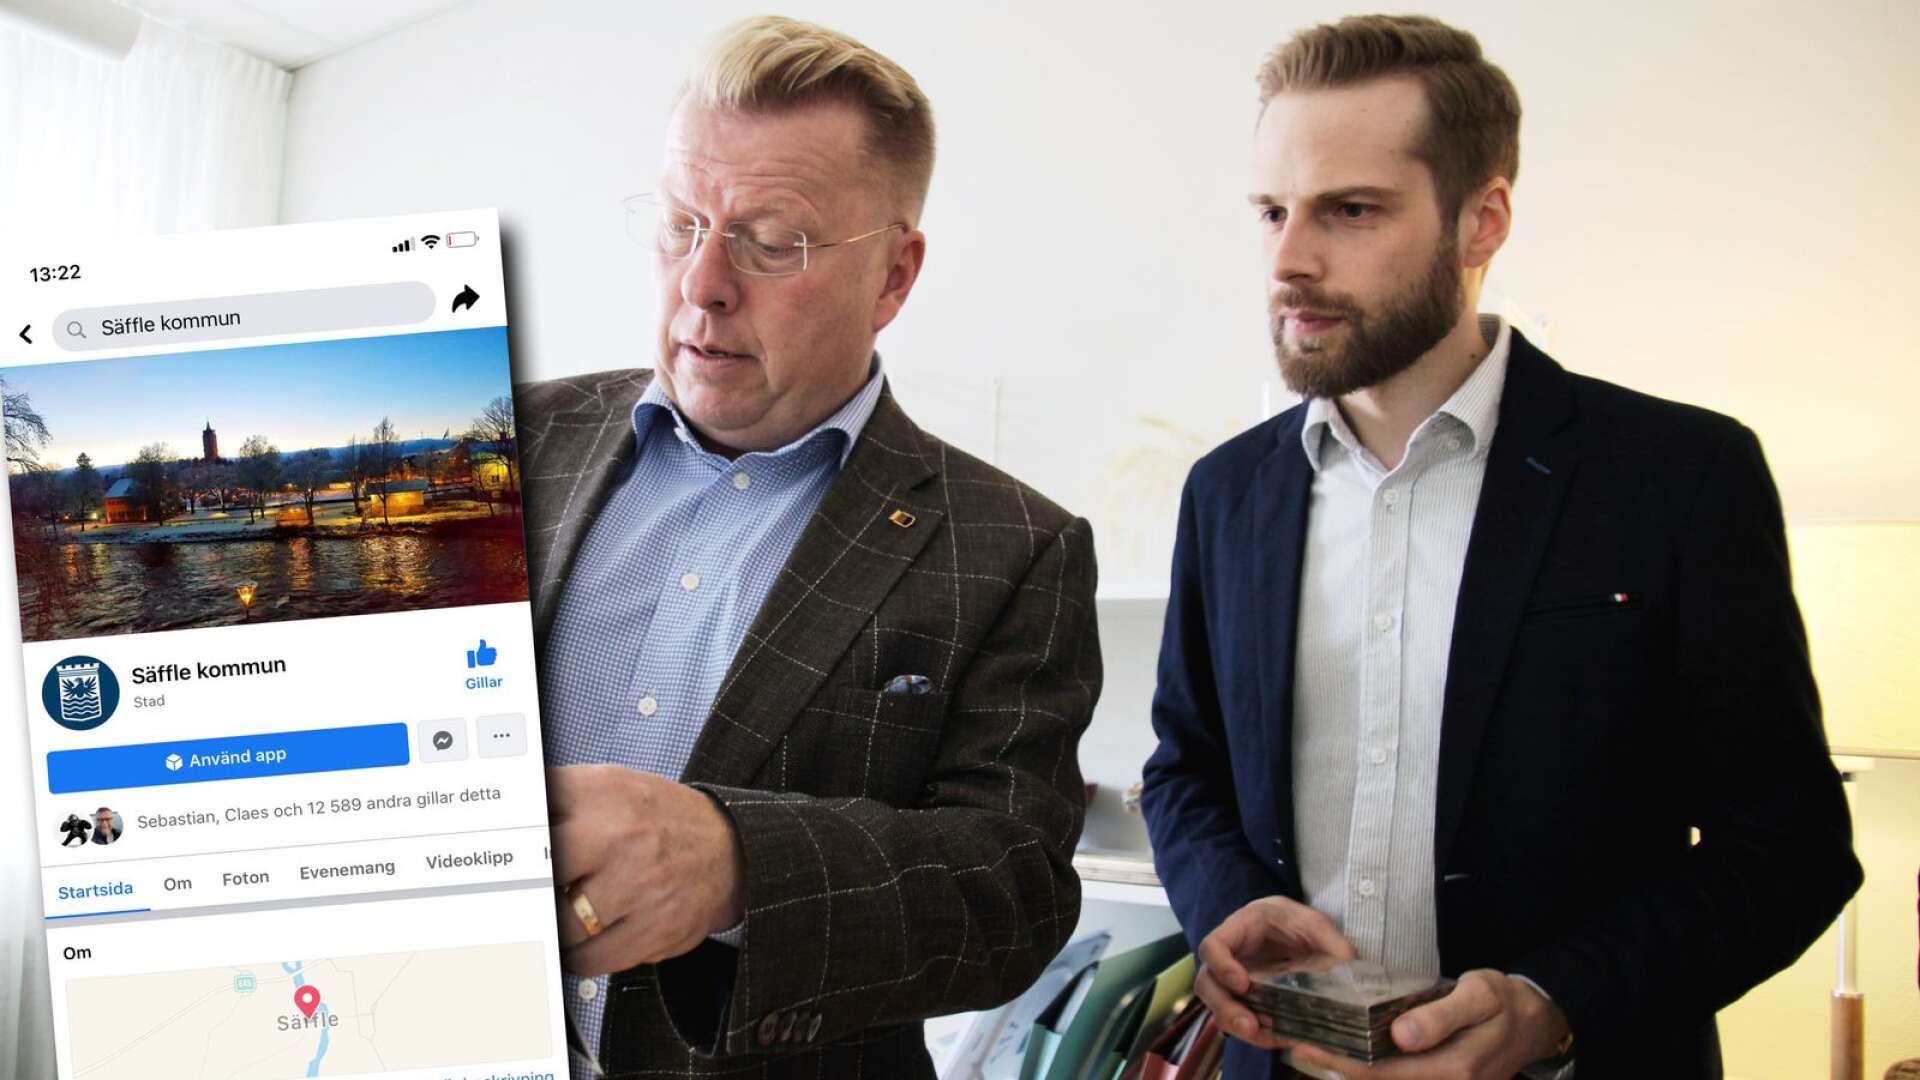 Säffle kommun toppar åter igen listan över Sveriges kommuner på Facebook, konstaterar kommundirektören Ingemar Rosén och Johan Österman som är kommunikationsansvarig i kommunen.